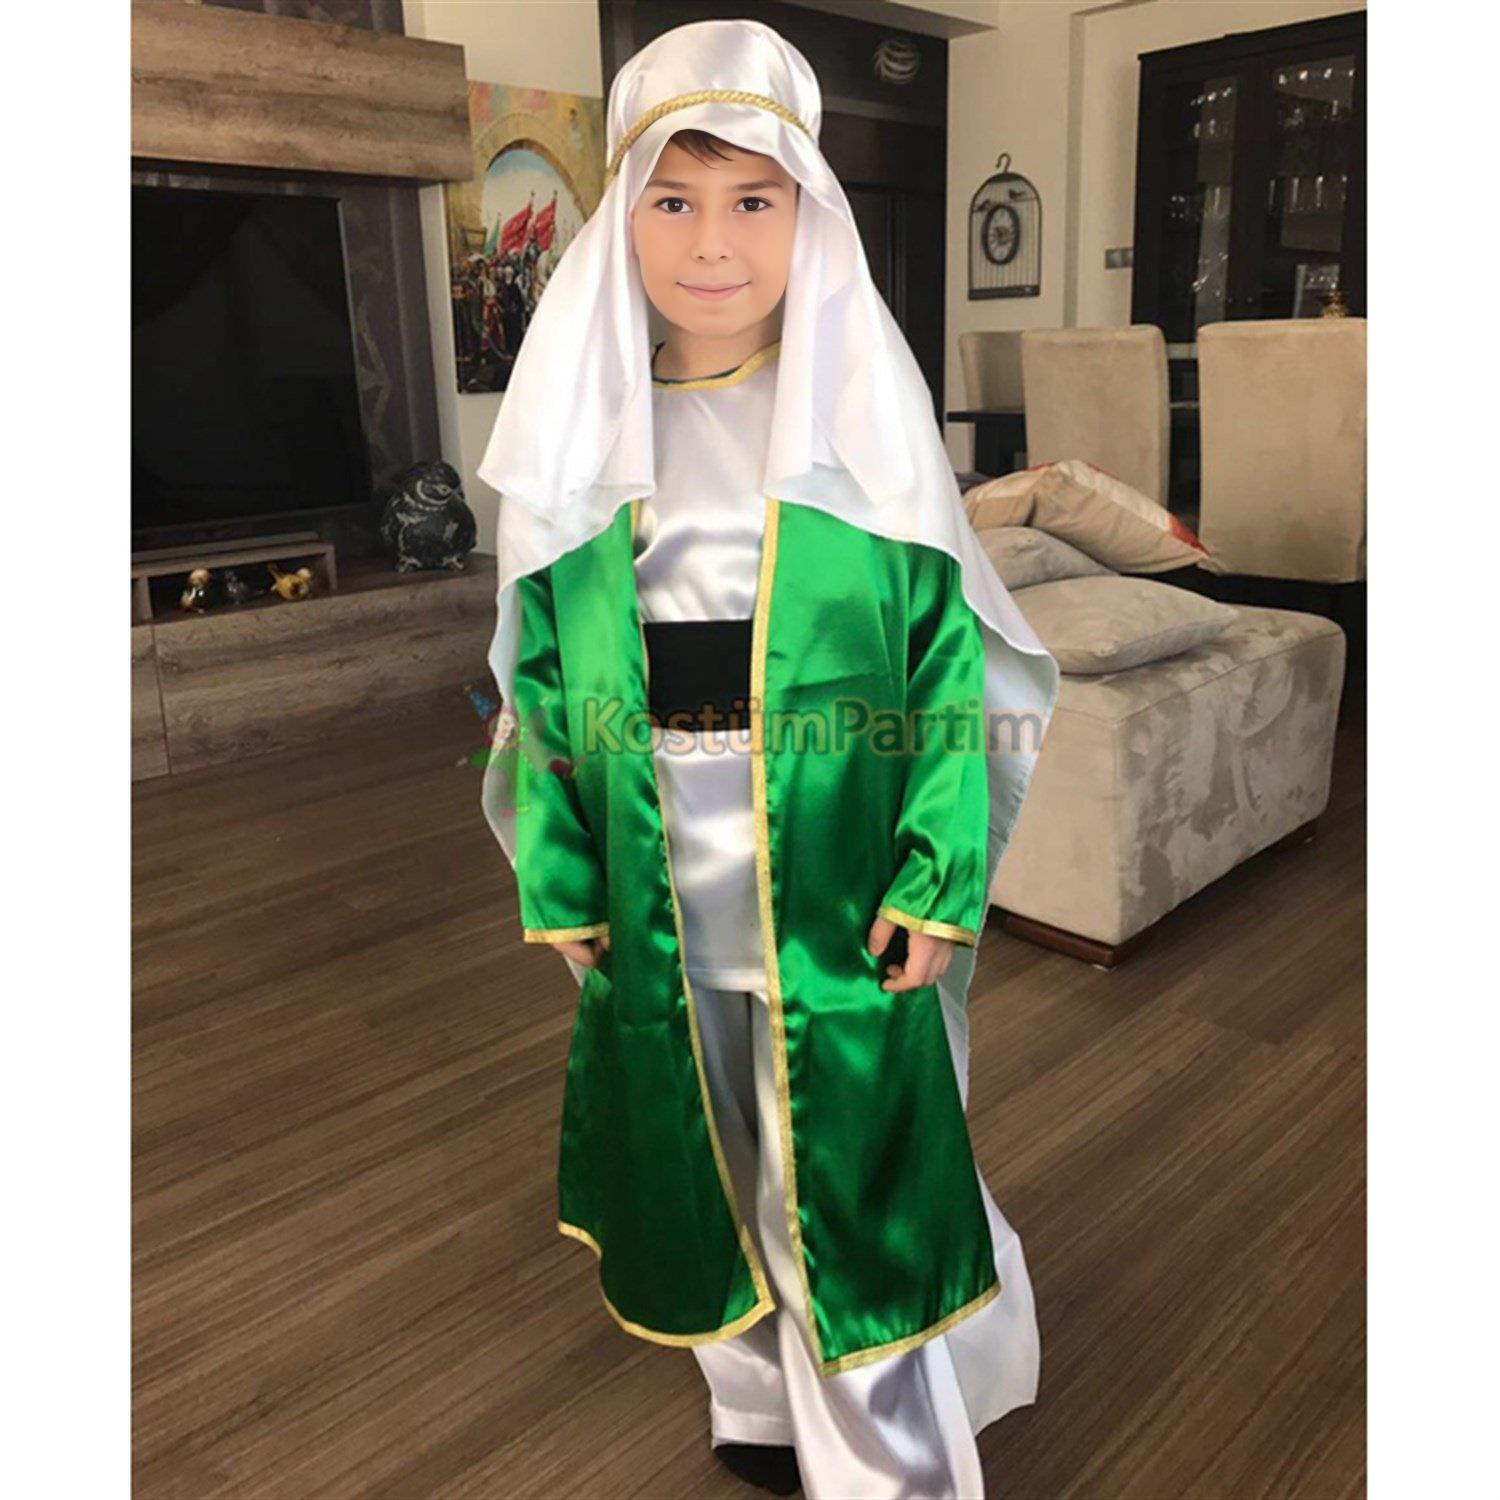 Arap Kostümü Erkek Çocuk - KostümPartim®